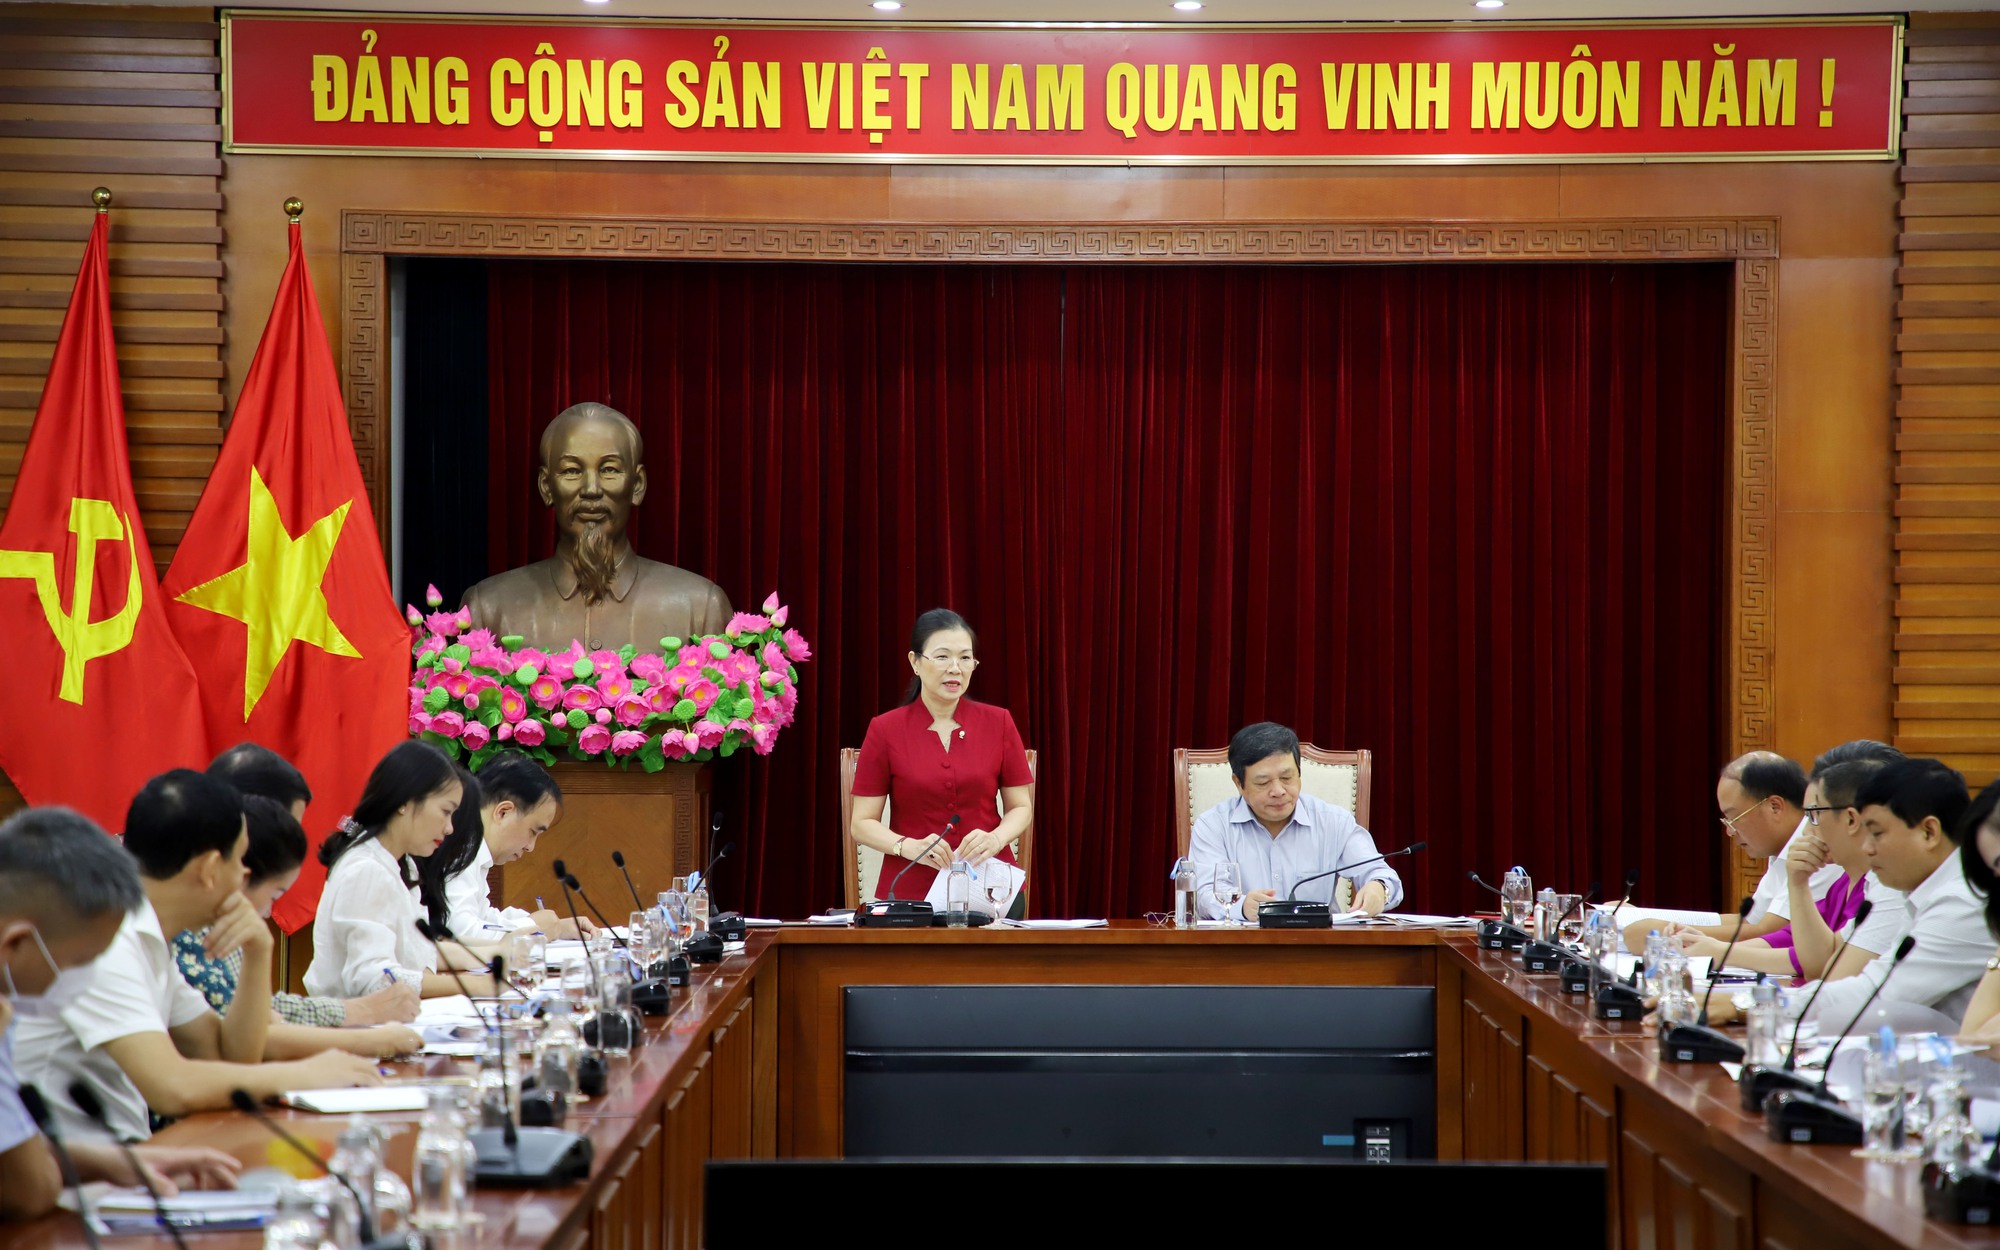 Sự đoàn kết đã giúp đất nước Việt Nam vượt qua những thử thách và khó khăn trên hành trình lịch sử. Xem hình ảnh liên quan đến đại đoàn kết các dân tộc sẽ khiến bạn cảm thấy tự hào về những giá trị đặc biệt này và muốn thực hiện đóng góp cho một cộng đồng mạnh mẽ hơn.